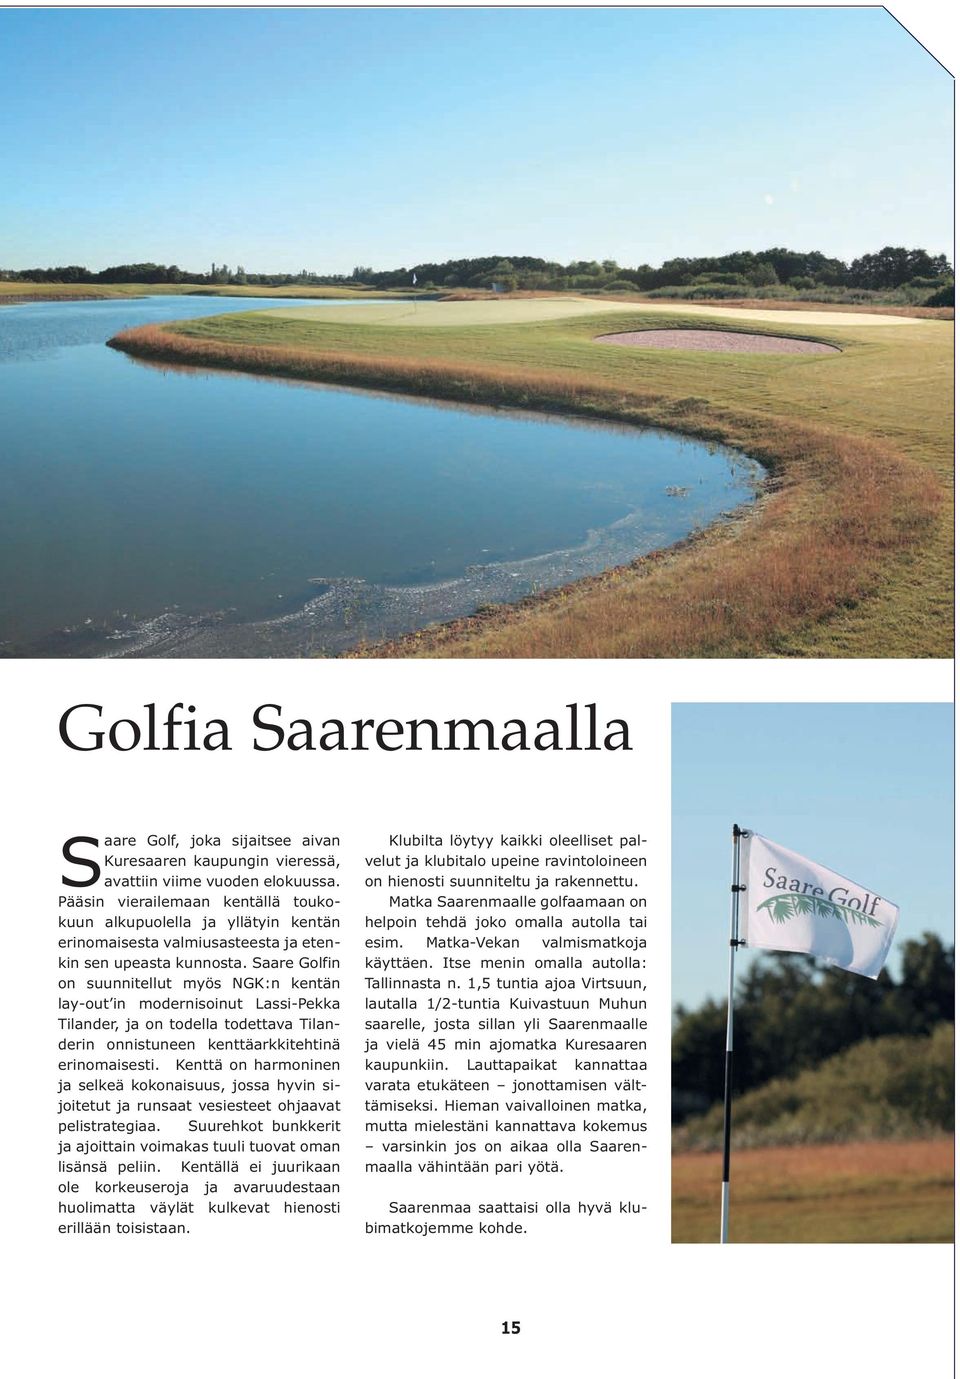 Saare Golfin on suunnitellut myös NGK:n kentän lay-out in modernisoinut Lassi-Pekka Tilander, ja on todella todettava Tilanderin onnistuneen kenttäarkkitehtinä erinomaisesti.